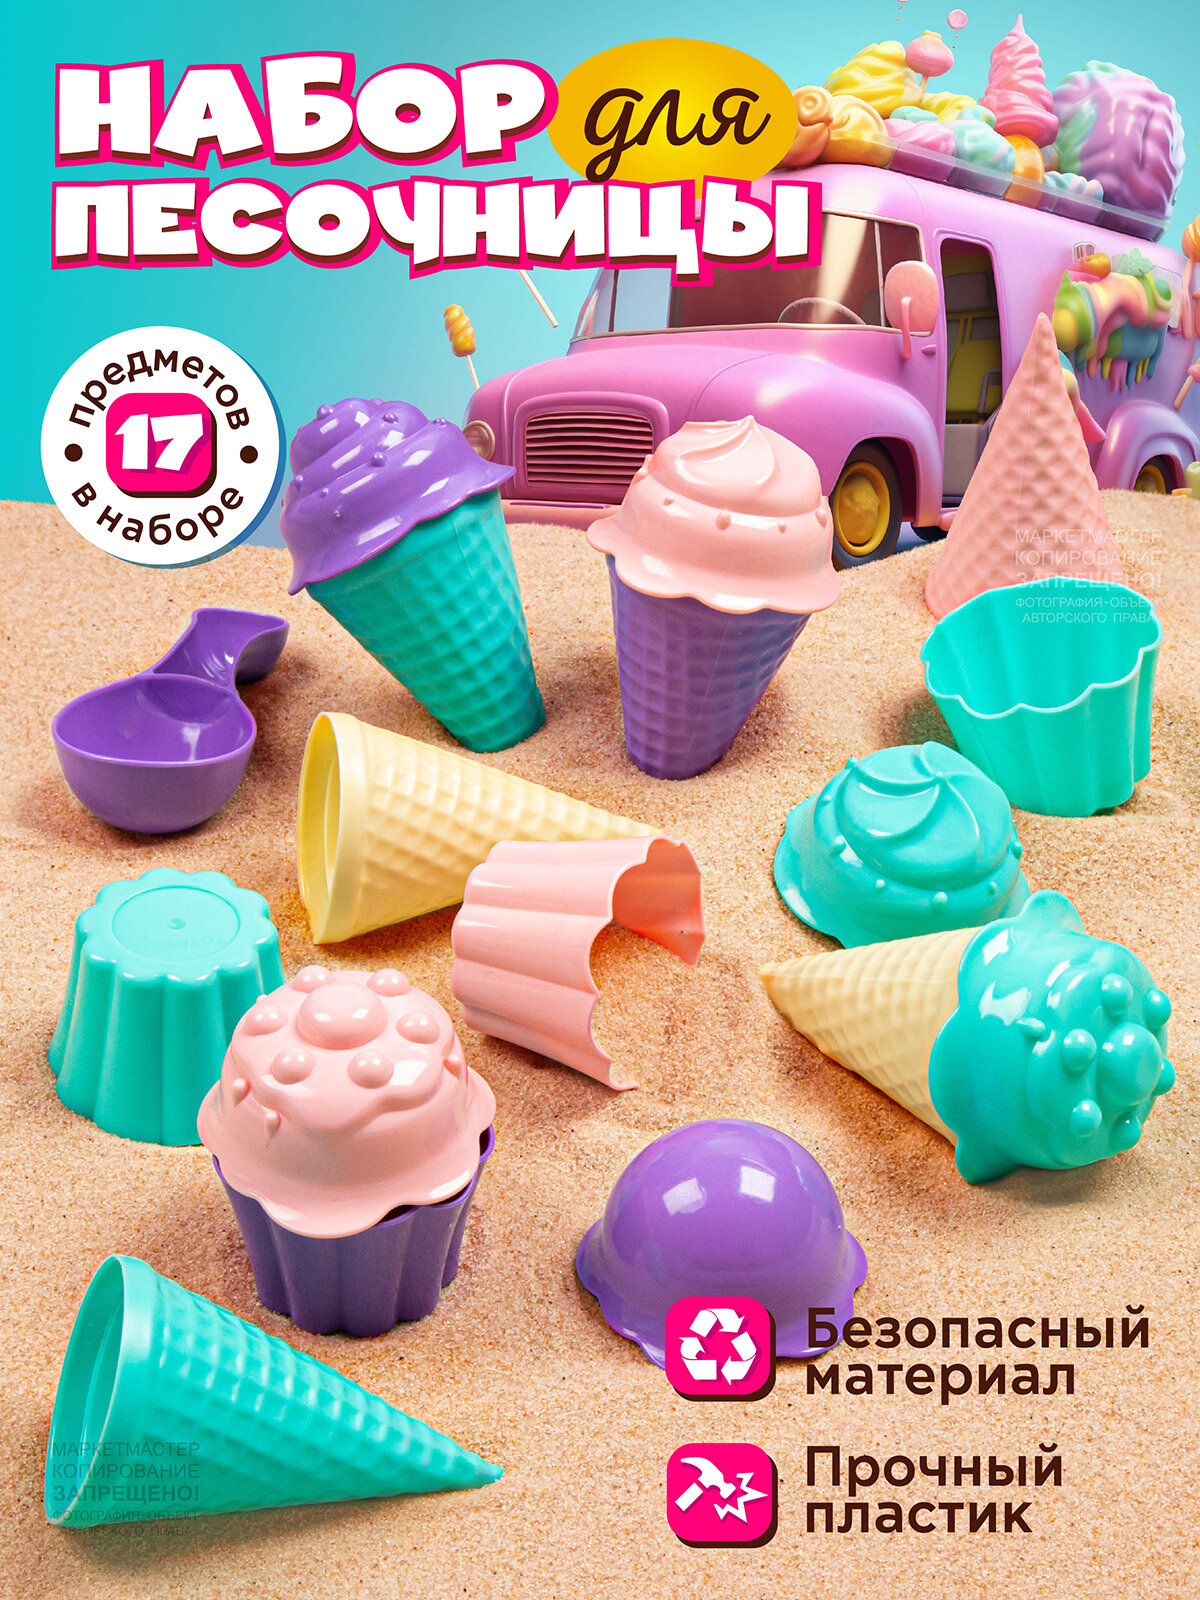 Песочный набор Мороженое ТМ "Компания Друзей", набор кондитера, маффины, формочки, для игры в песочнице, JB5300644